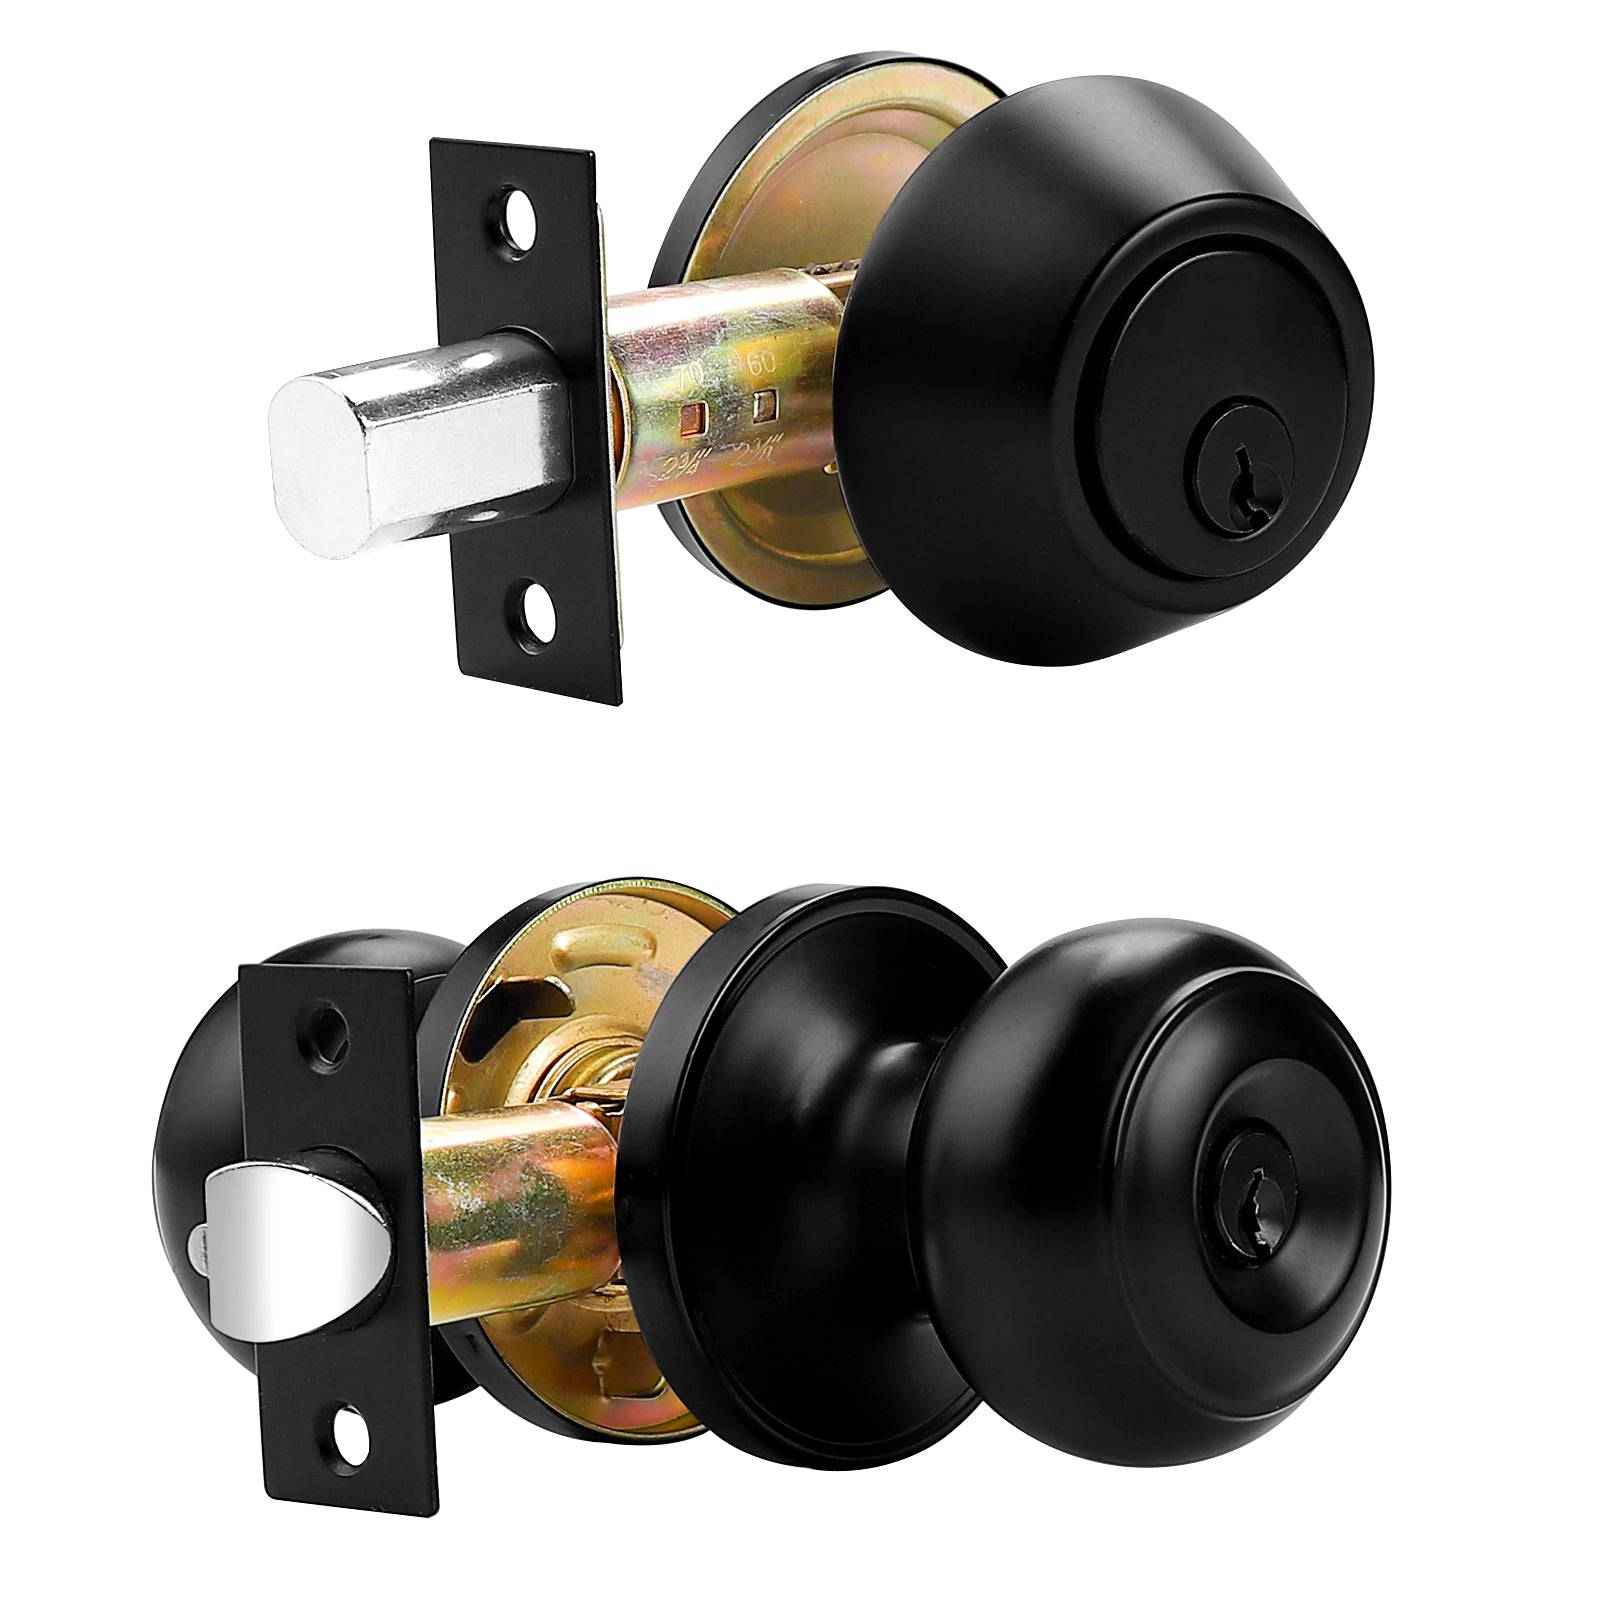 Keyed Alike Entry Door Lock Knob with Single Cylinder Deadbolt, Black Finish Combo Pack - DL609ET-101BK